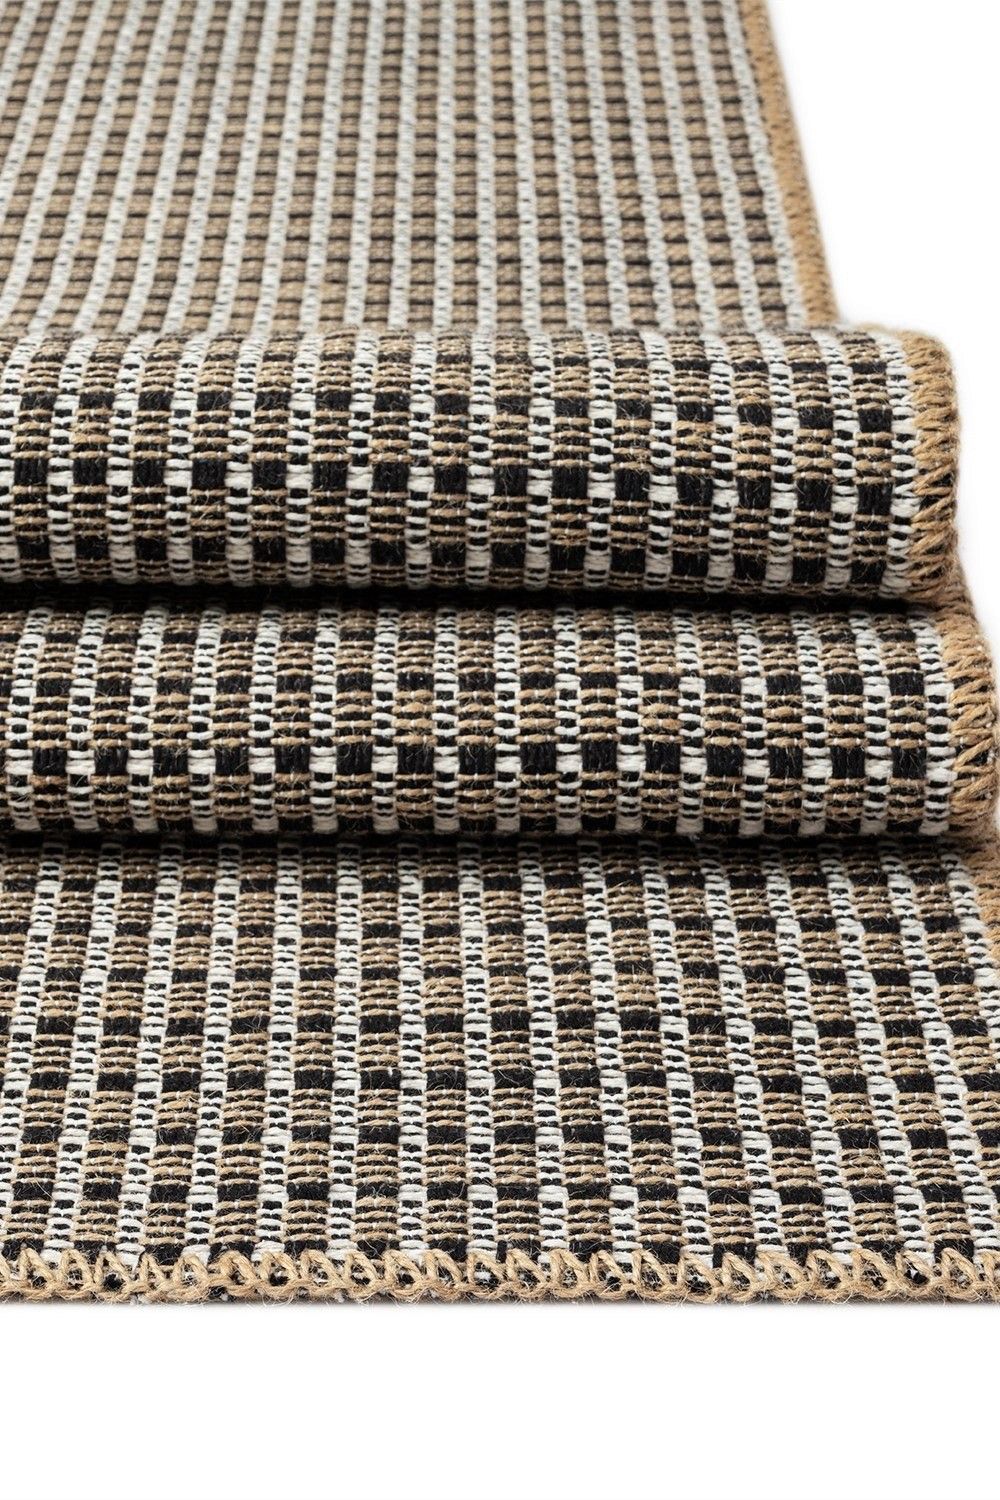 Friolero 2576 - Carpet (120 x 180)